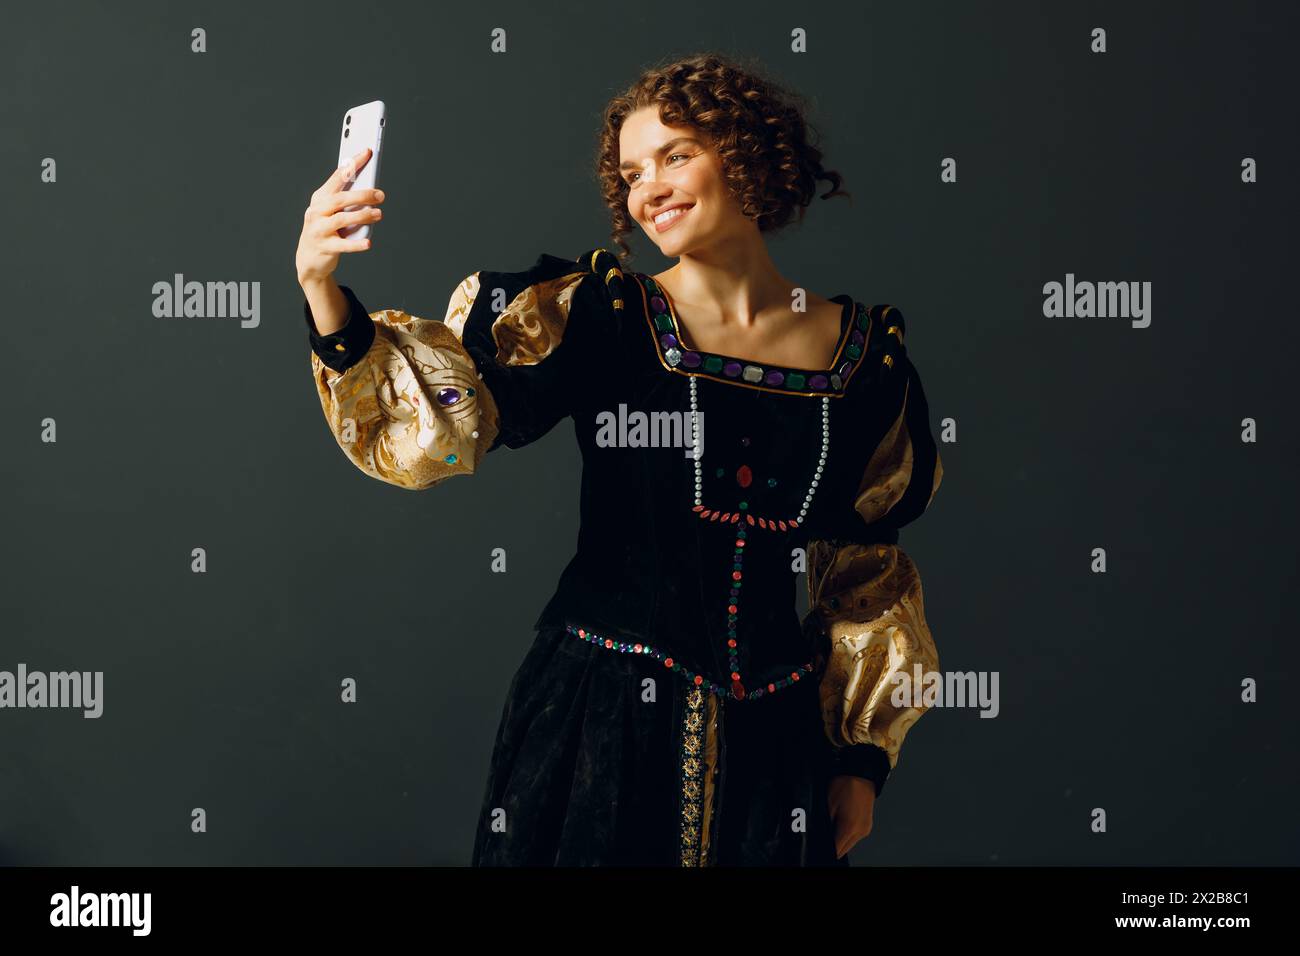 Porträt einer jungen Aristokratin, die ein Foto-Selfie mit Handy macht und in einem mittelalterlichen Kleid gekleidet ist Stockfoto